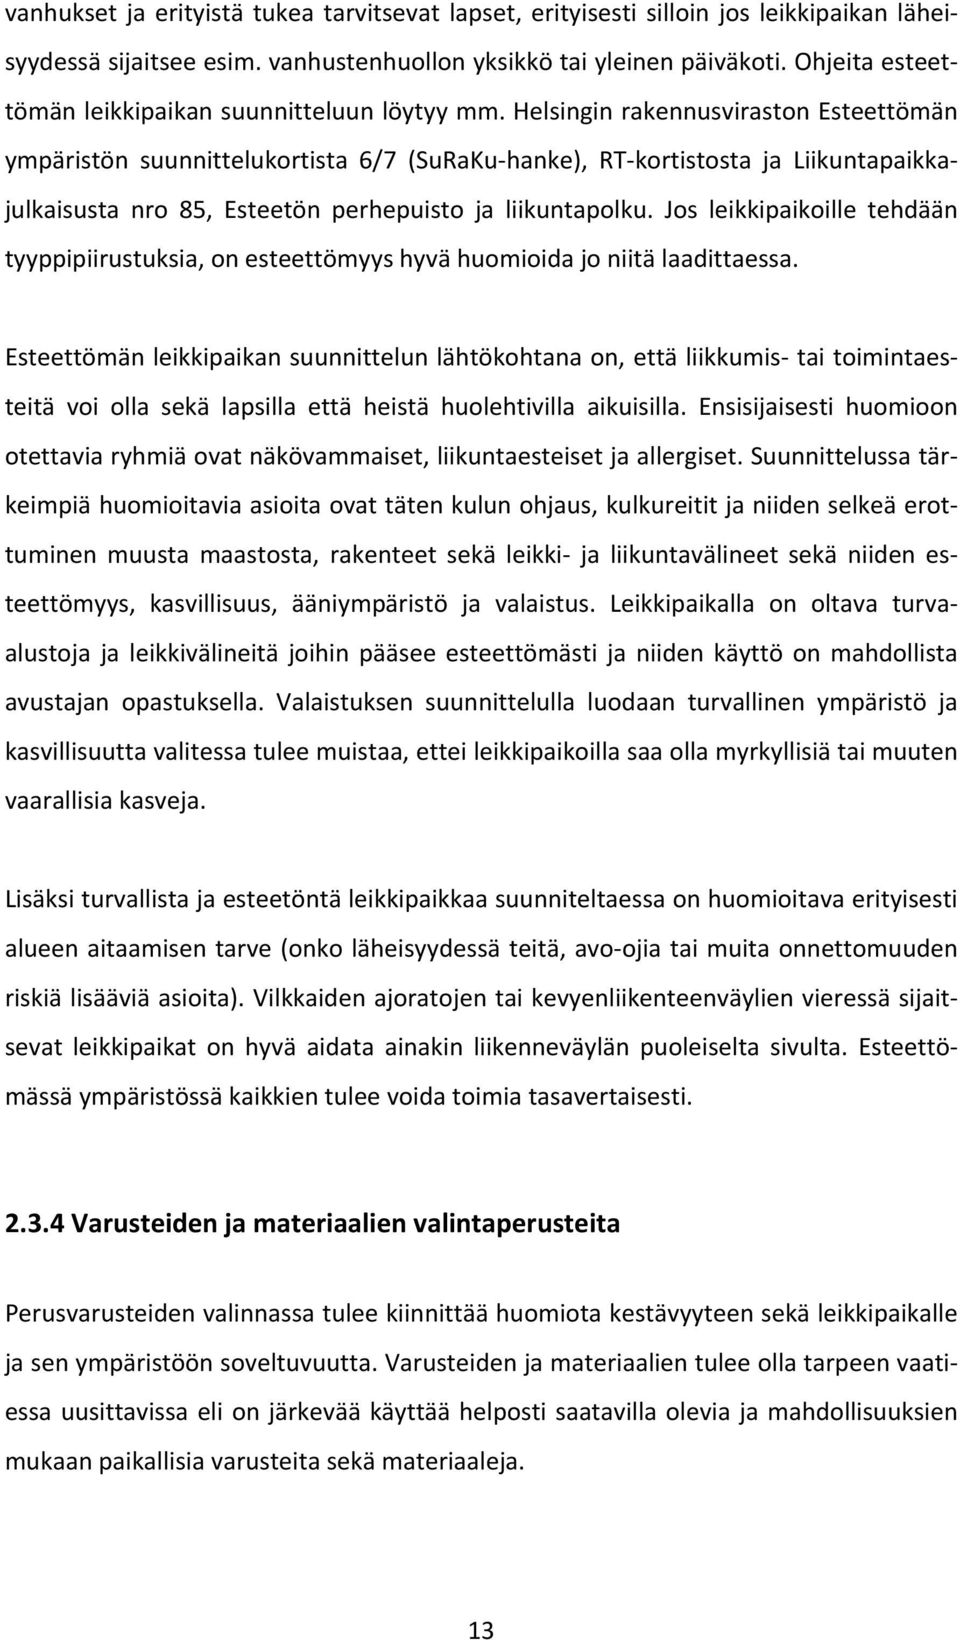 Helsingin rakennusviraston Esteettömän ympäristön suunnittelukortista 6/7 (SuRaKu hanke), RT kortistosta ja Liikuntapaikkajulkaisusta nro 85, Esteetön perhepuisto ja liikuntapolku.